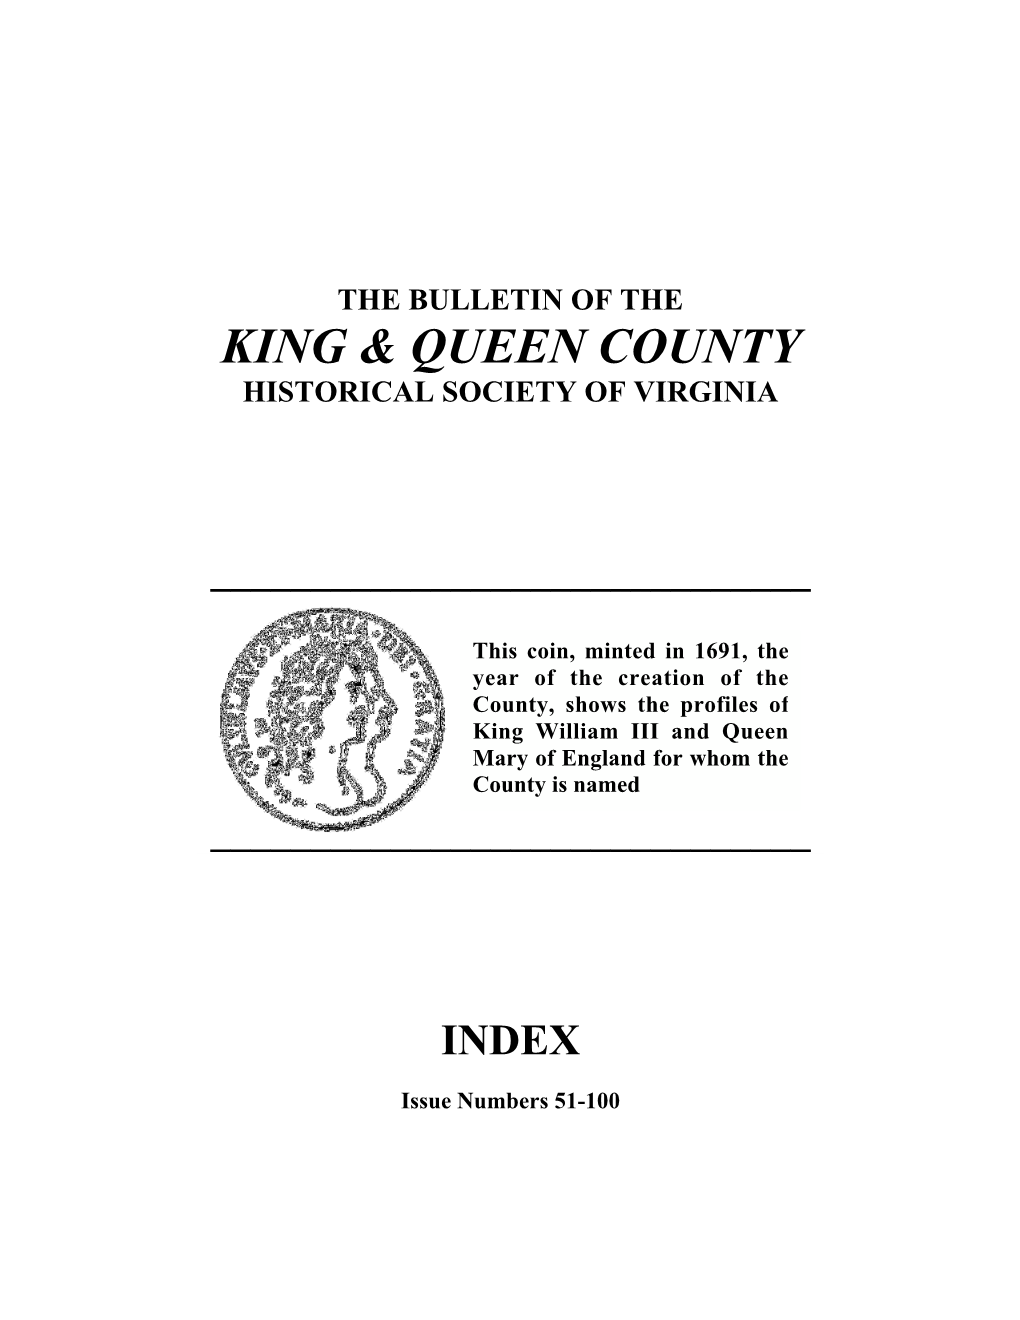 King & Queen County